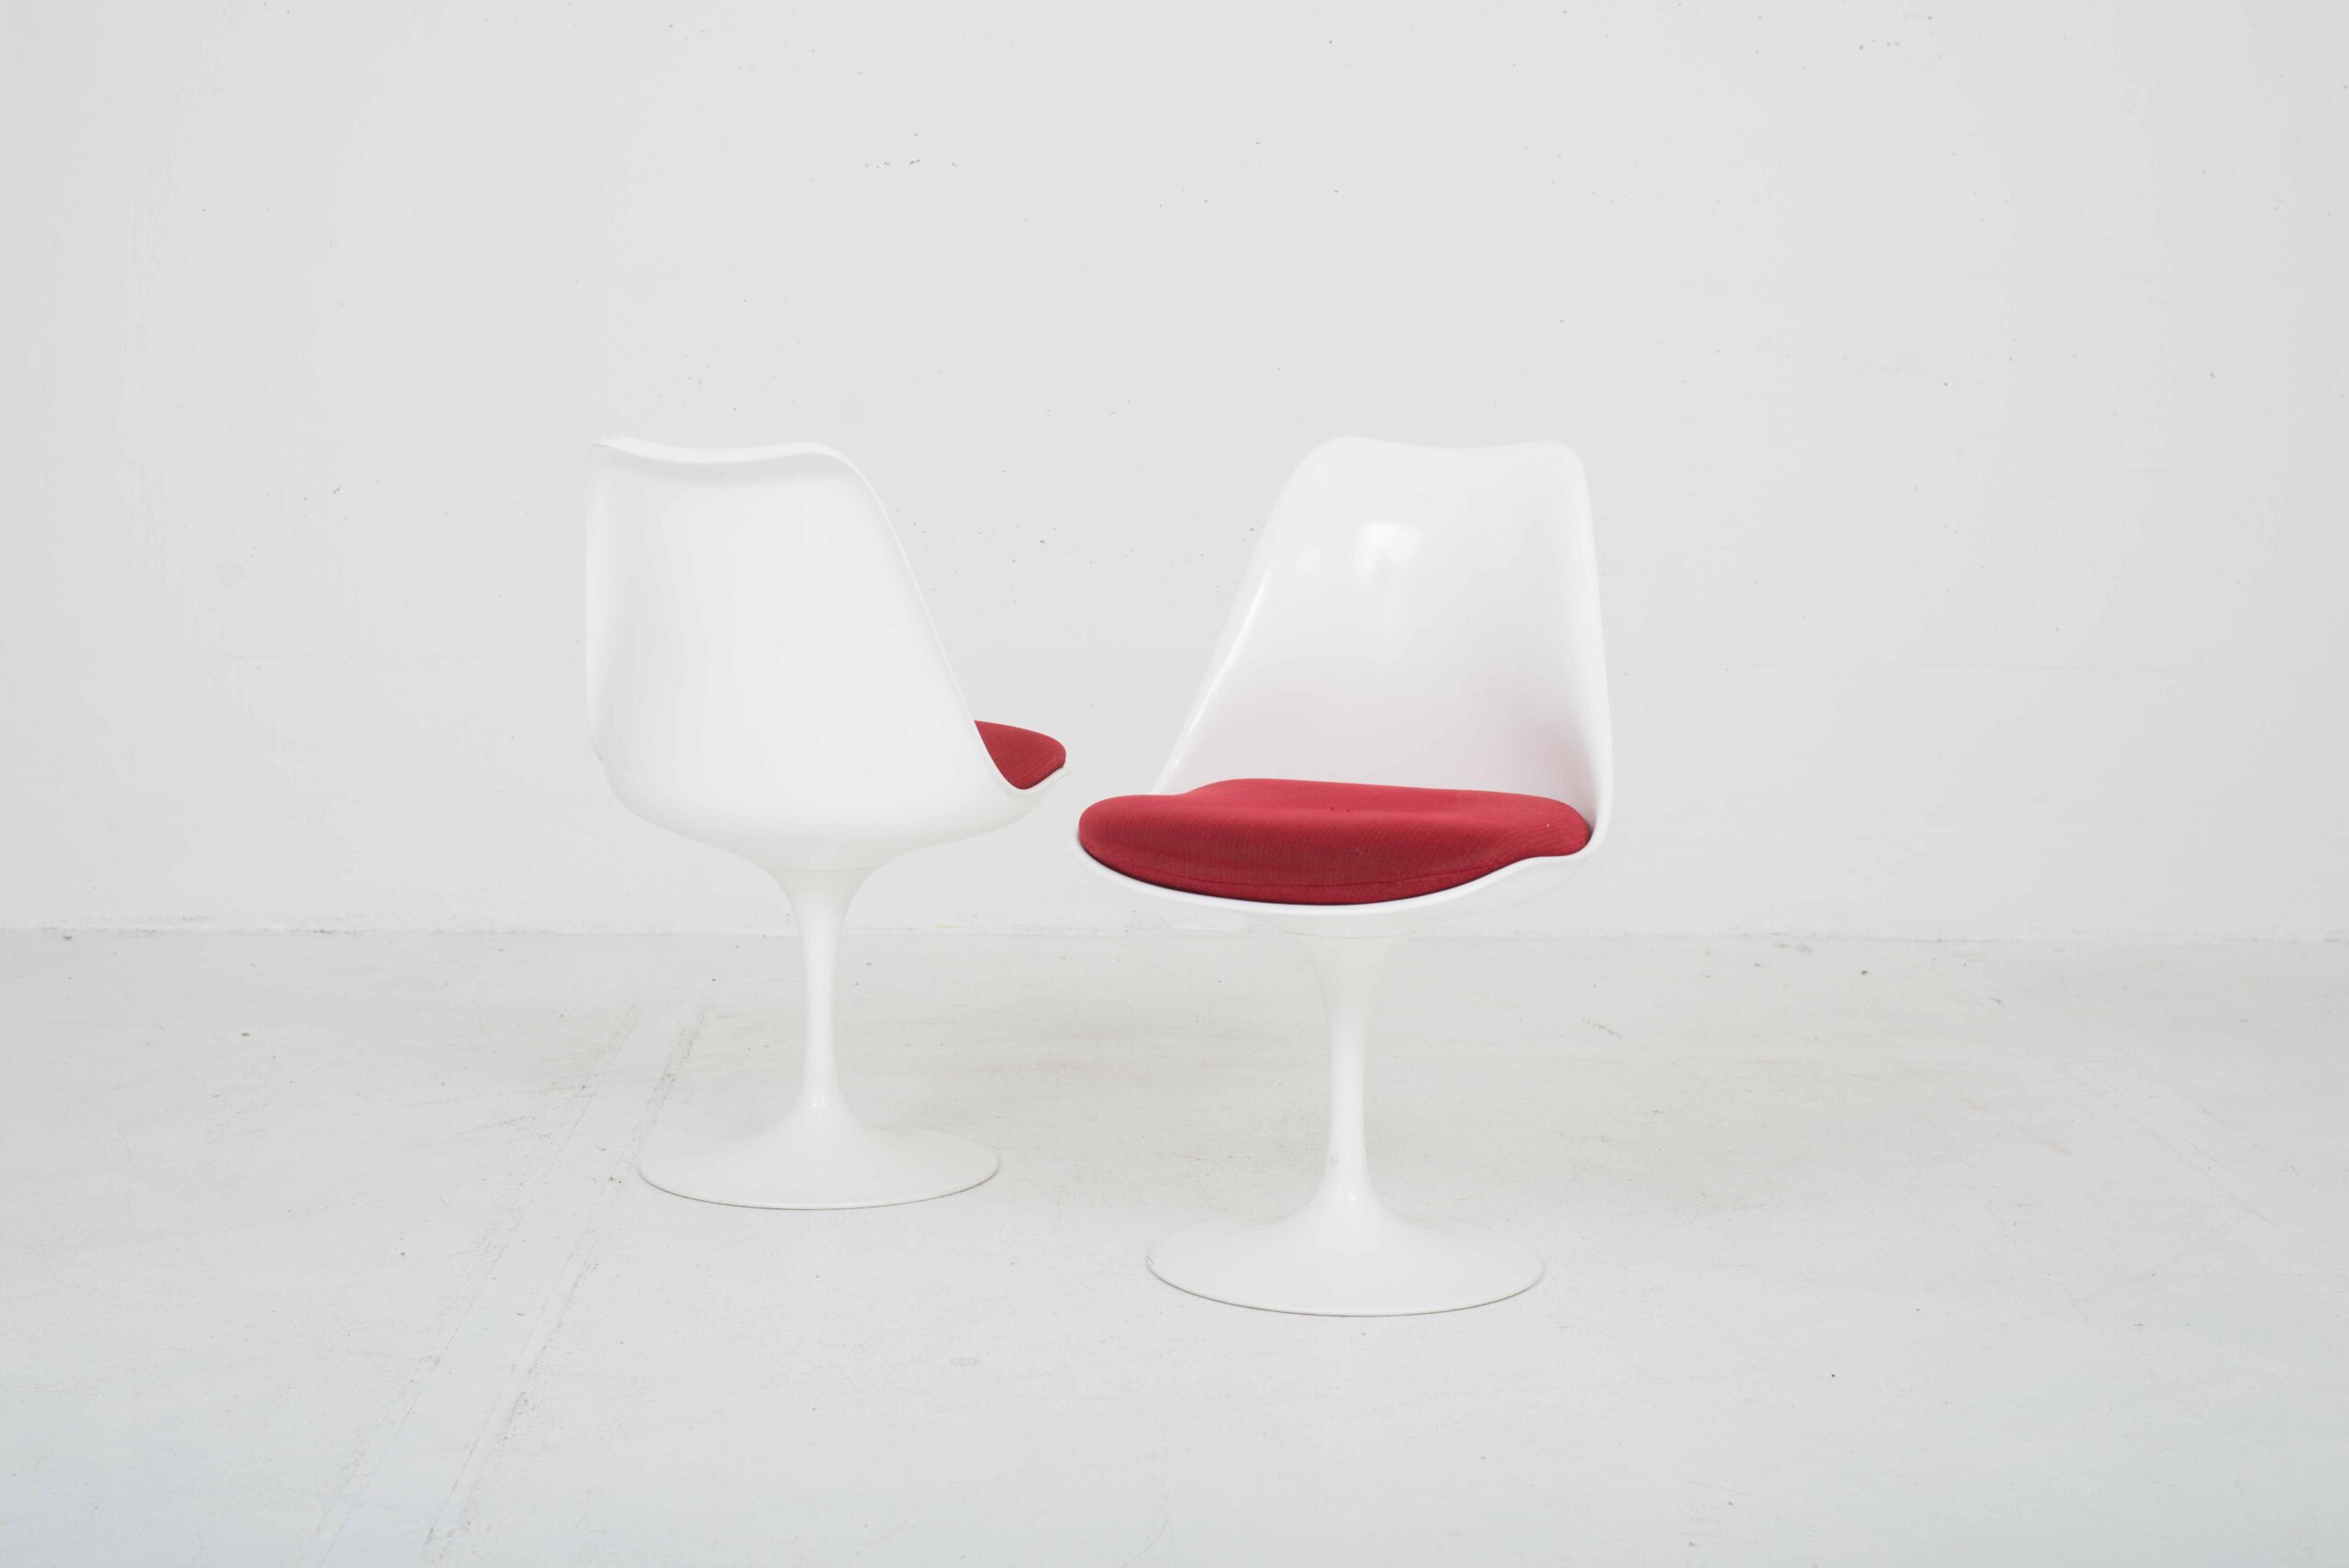 Eero Saarinen Tulip Stühle von Knoll International, im Zweierset-0